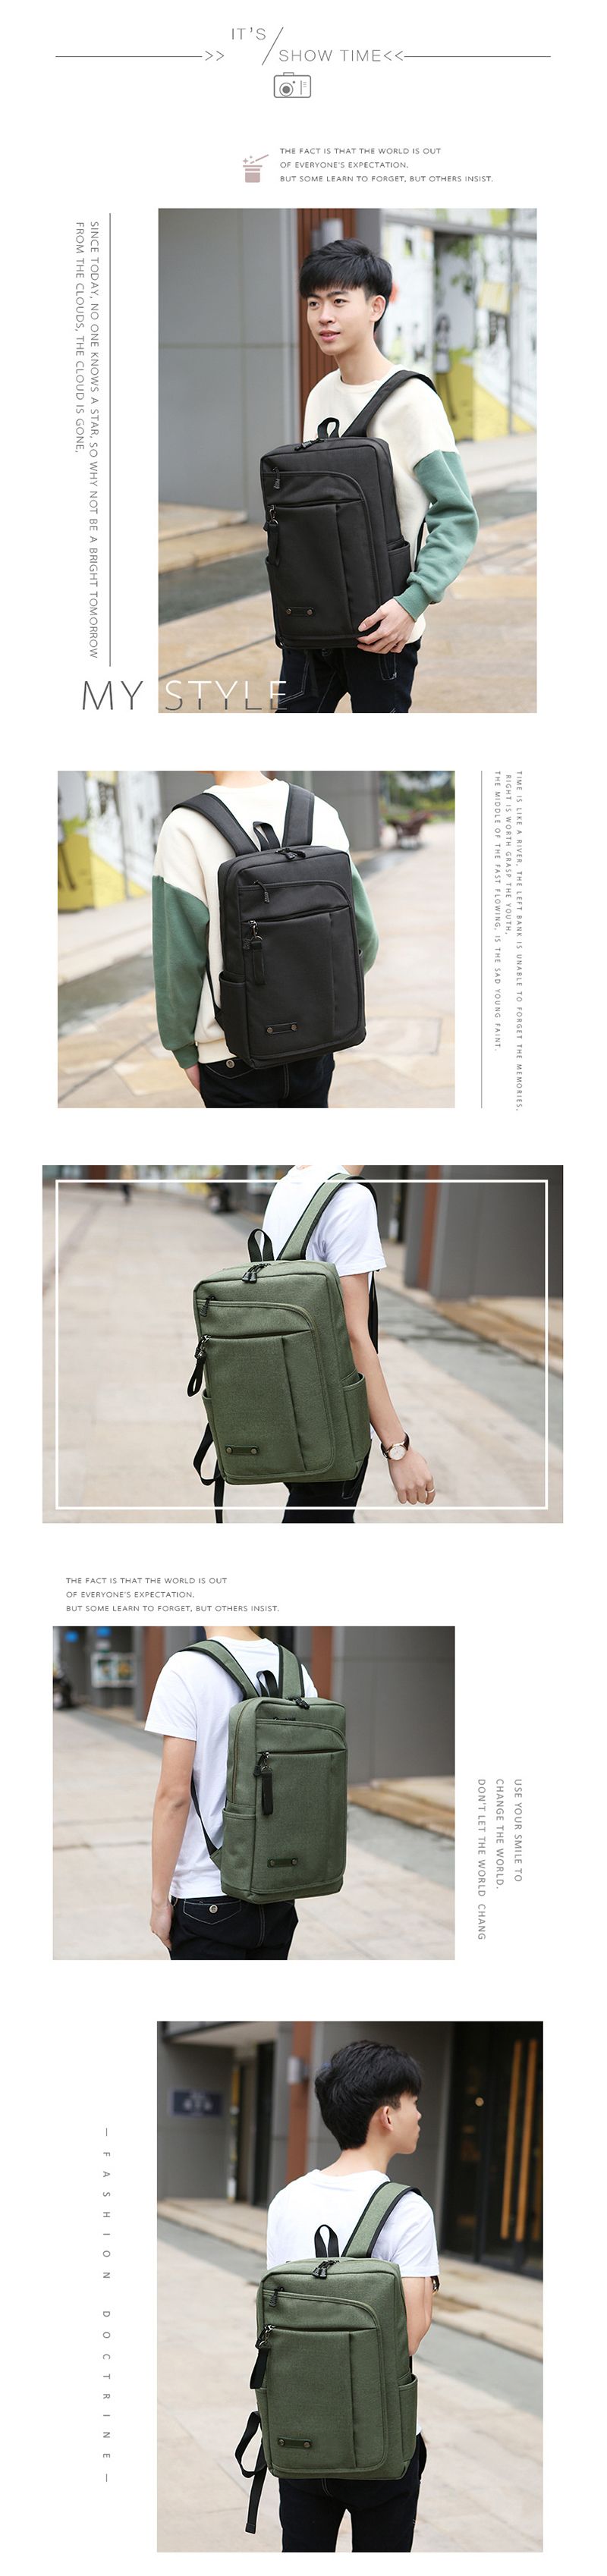 17-Inch-Backpack-Laptop-Backpacks-Mens-Womens-Shoulder-Bag-Laptop-Bag-Casual-Travel-Backpack-College-1496368